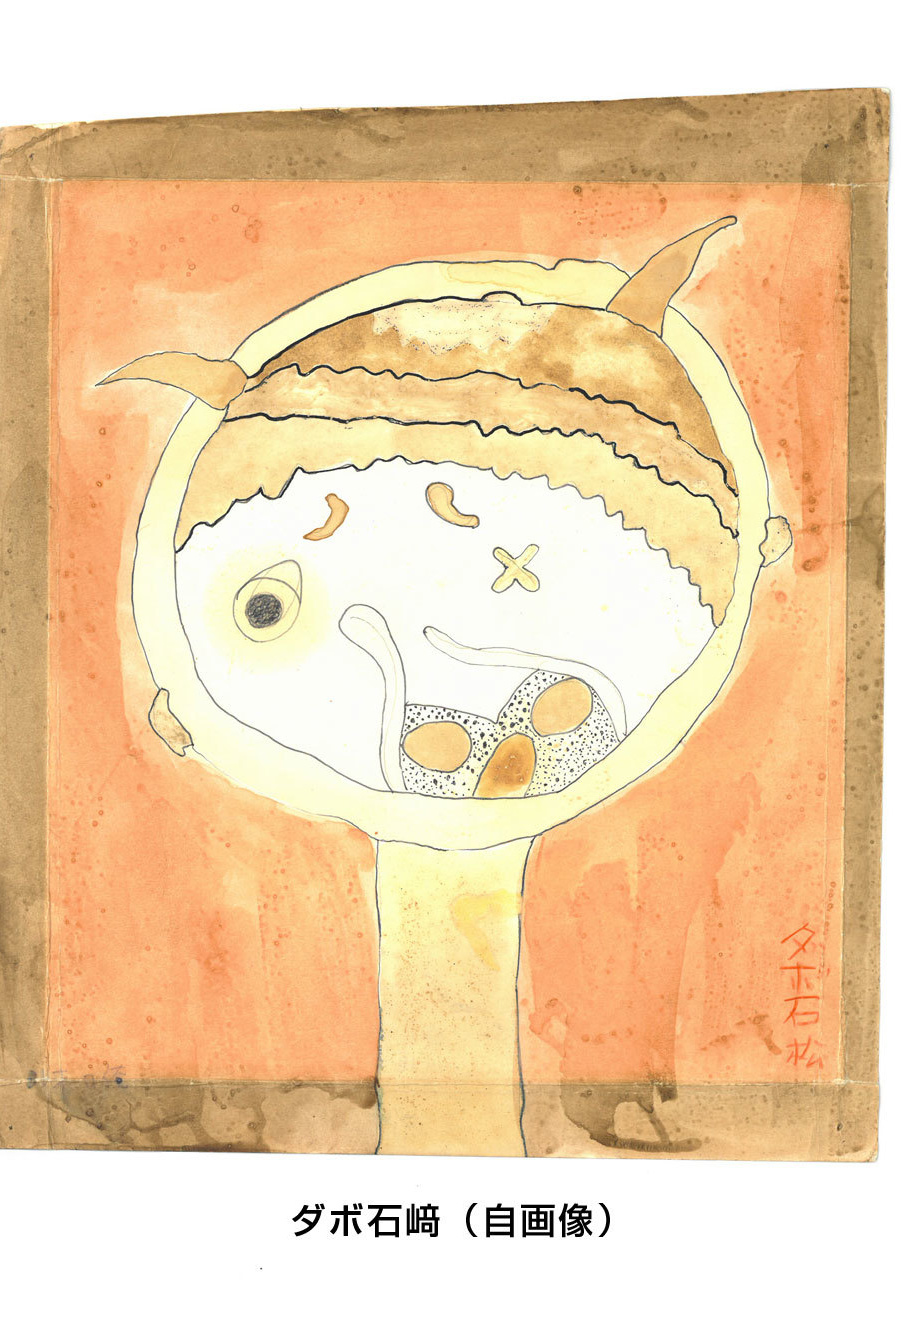 ダボ石松の自画像